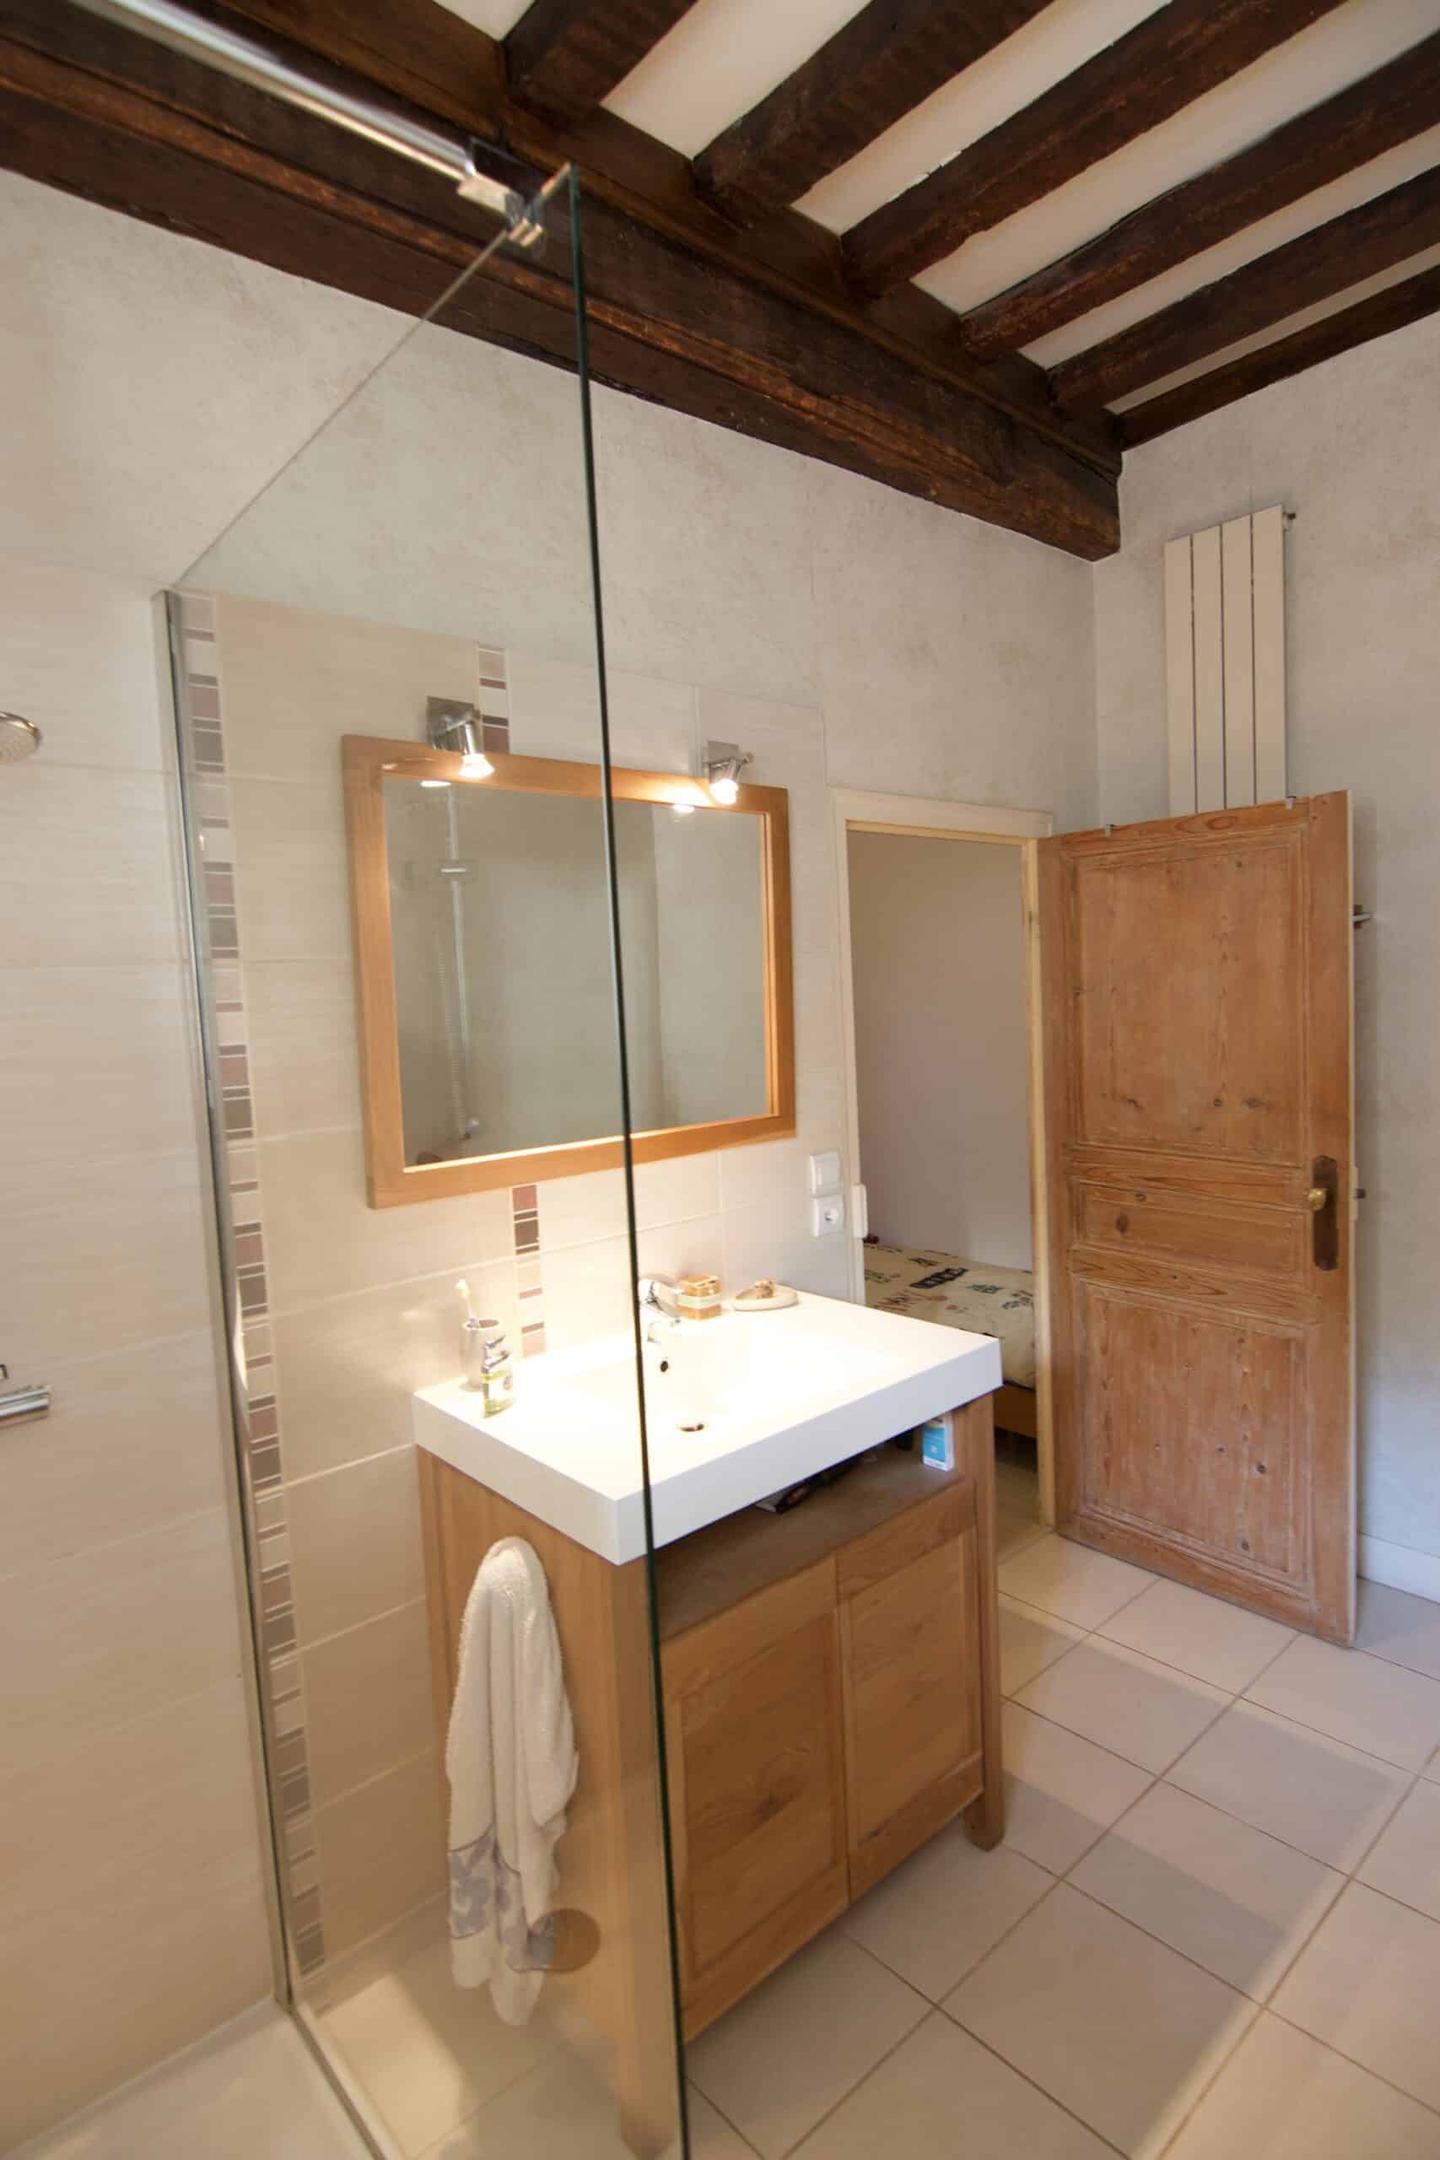 Logement GreenGo: Chambre familiale "Moutarde" avec salle de bains - Image 3